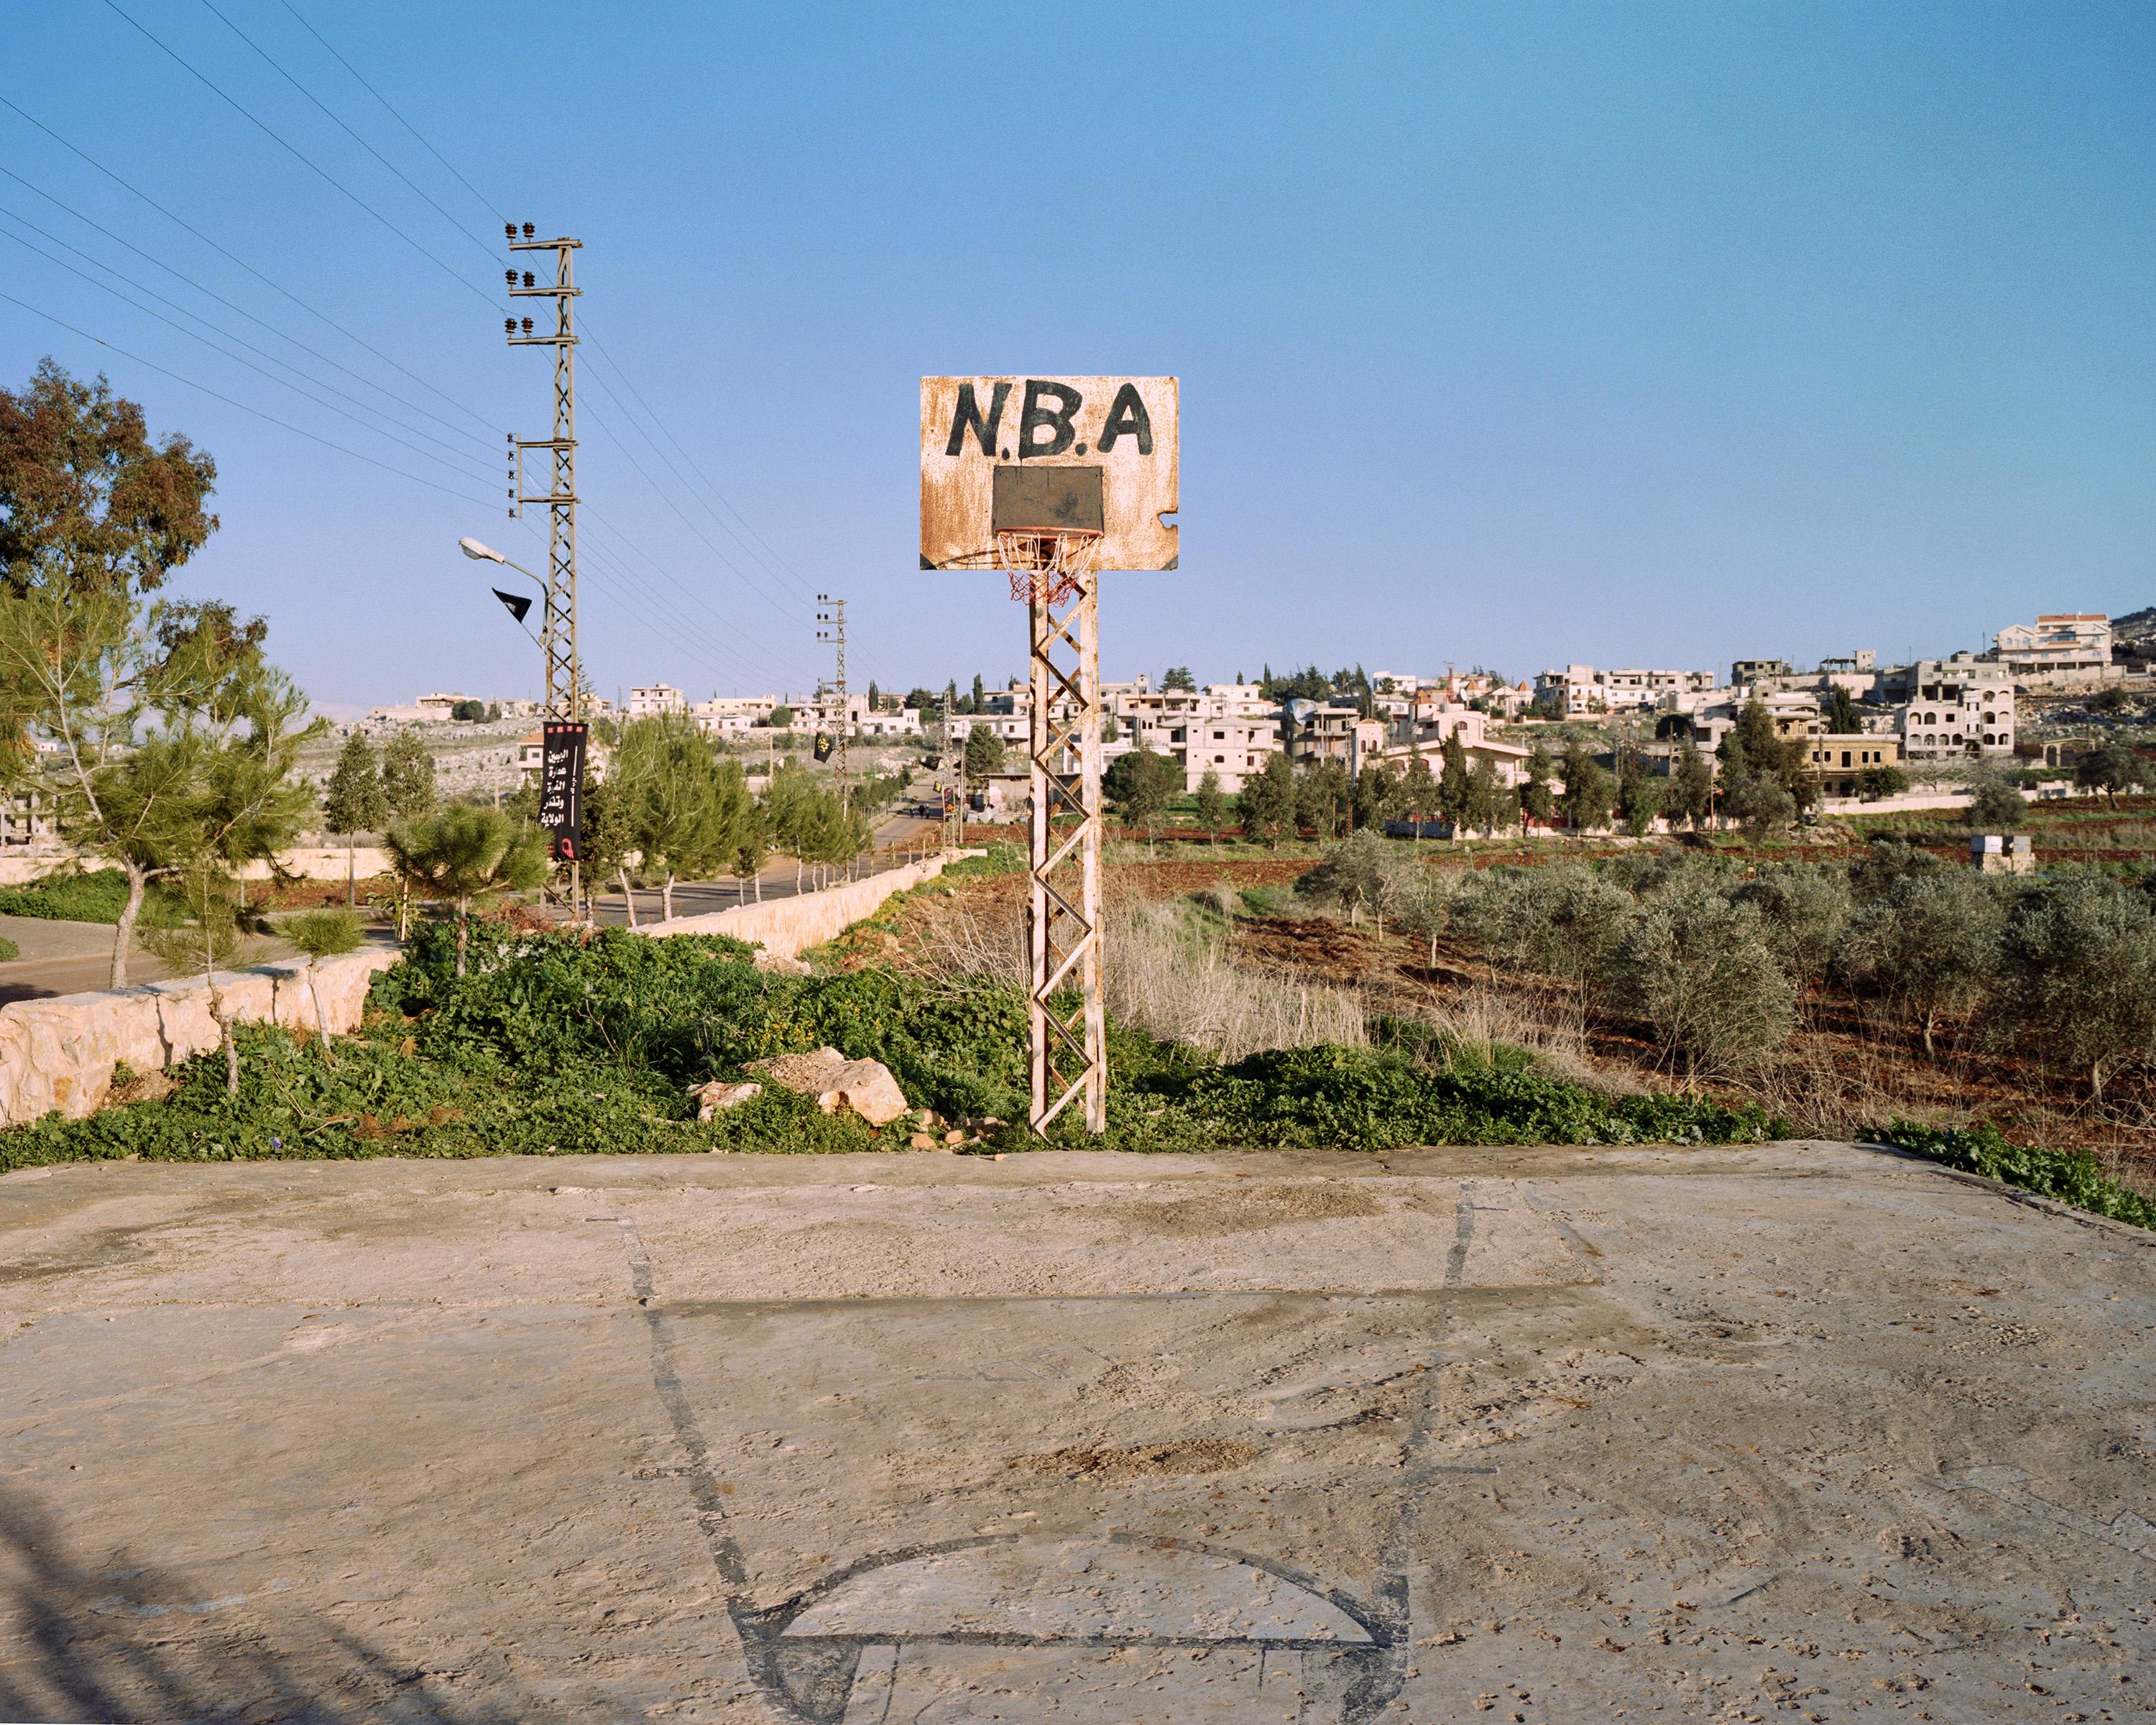 Color Photograph Sean Hemmerle - "Nebatieh, Liban, 2007" photographie de terrain de basket-ball HOOPS en édition limitée